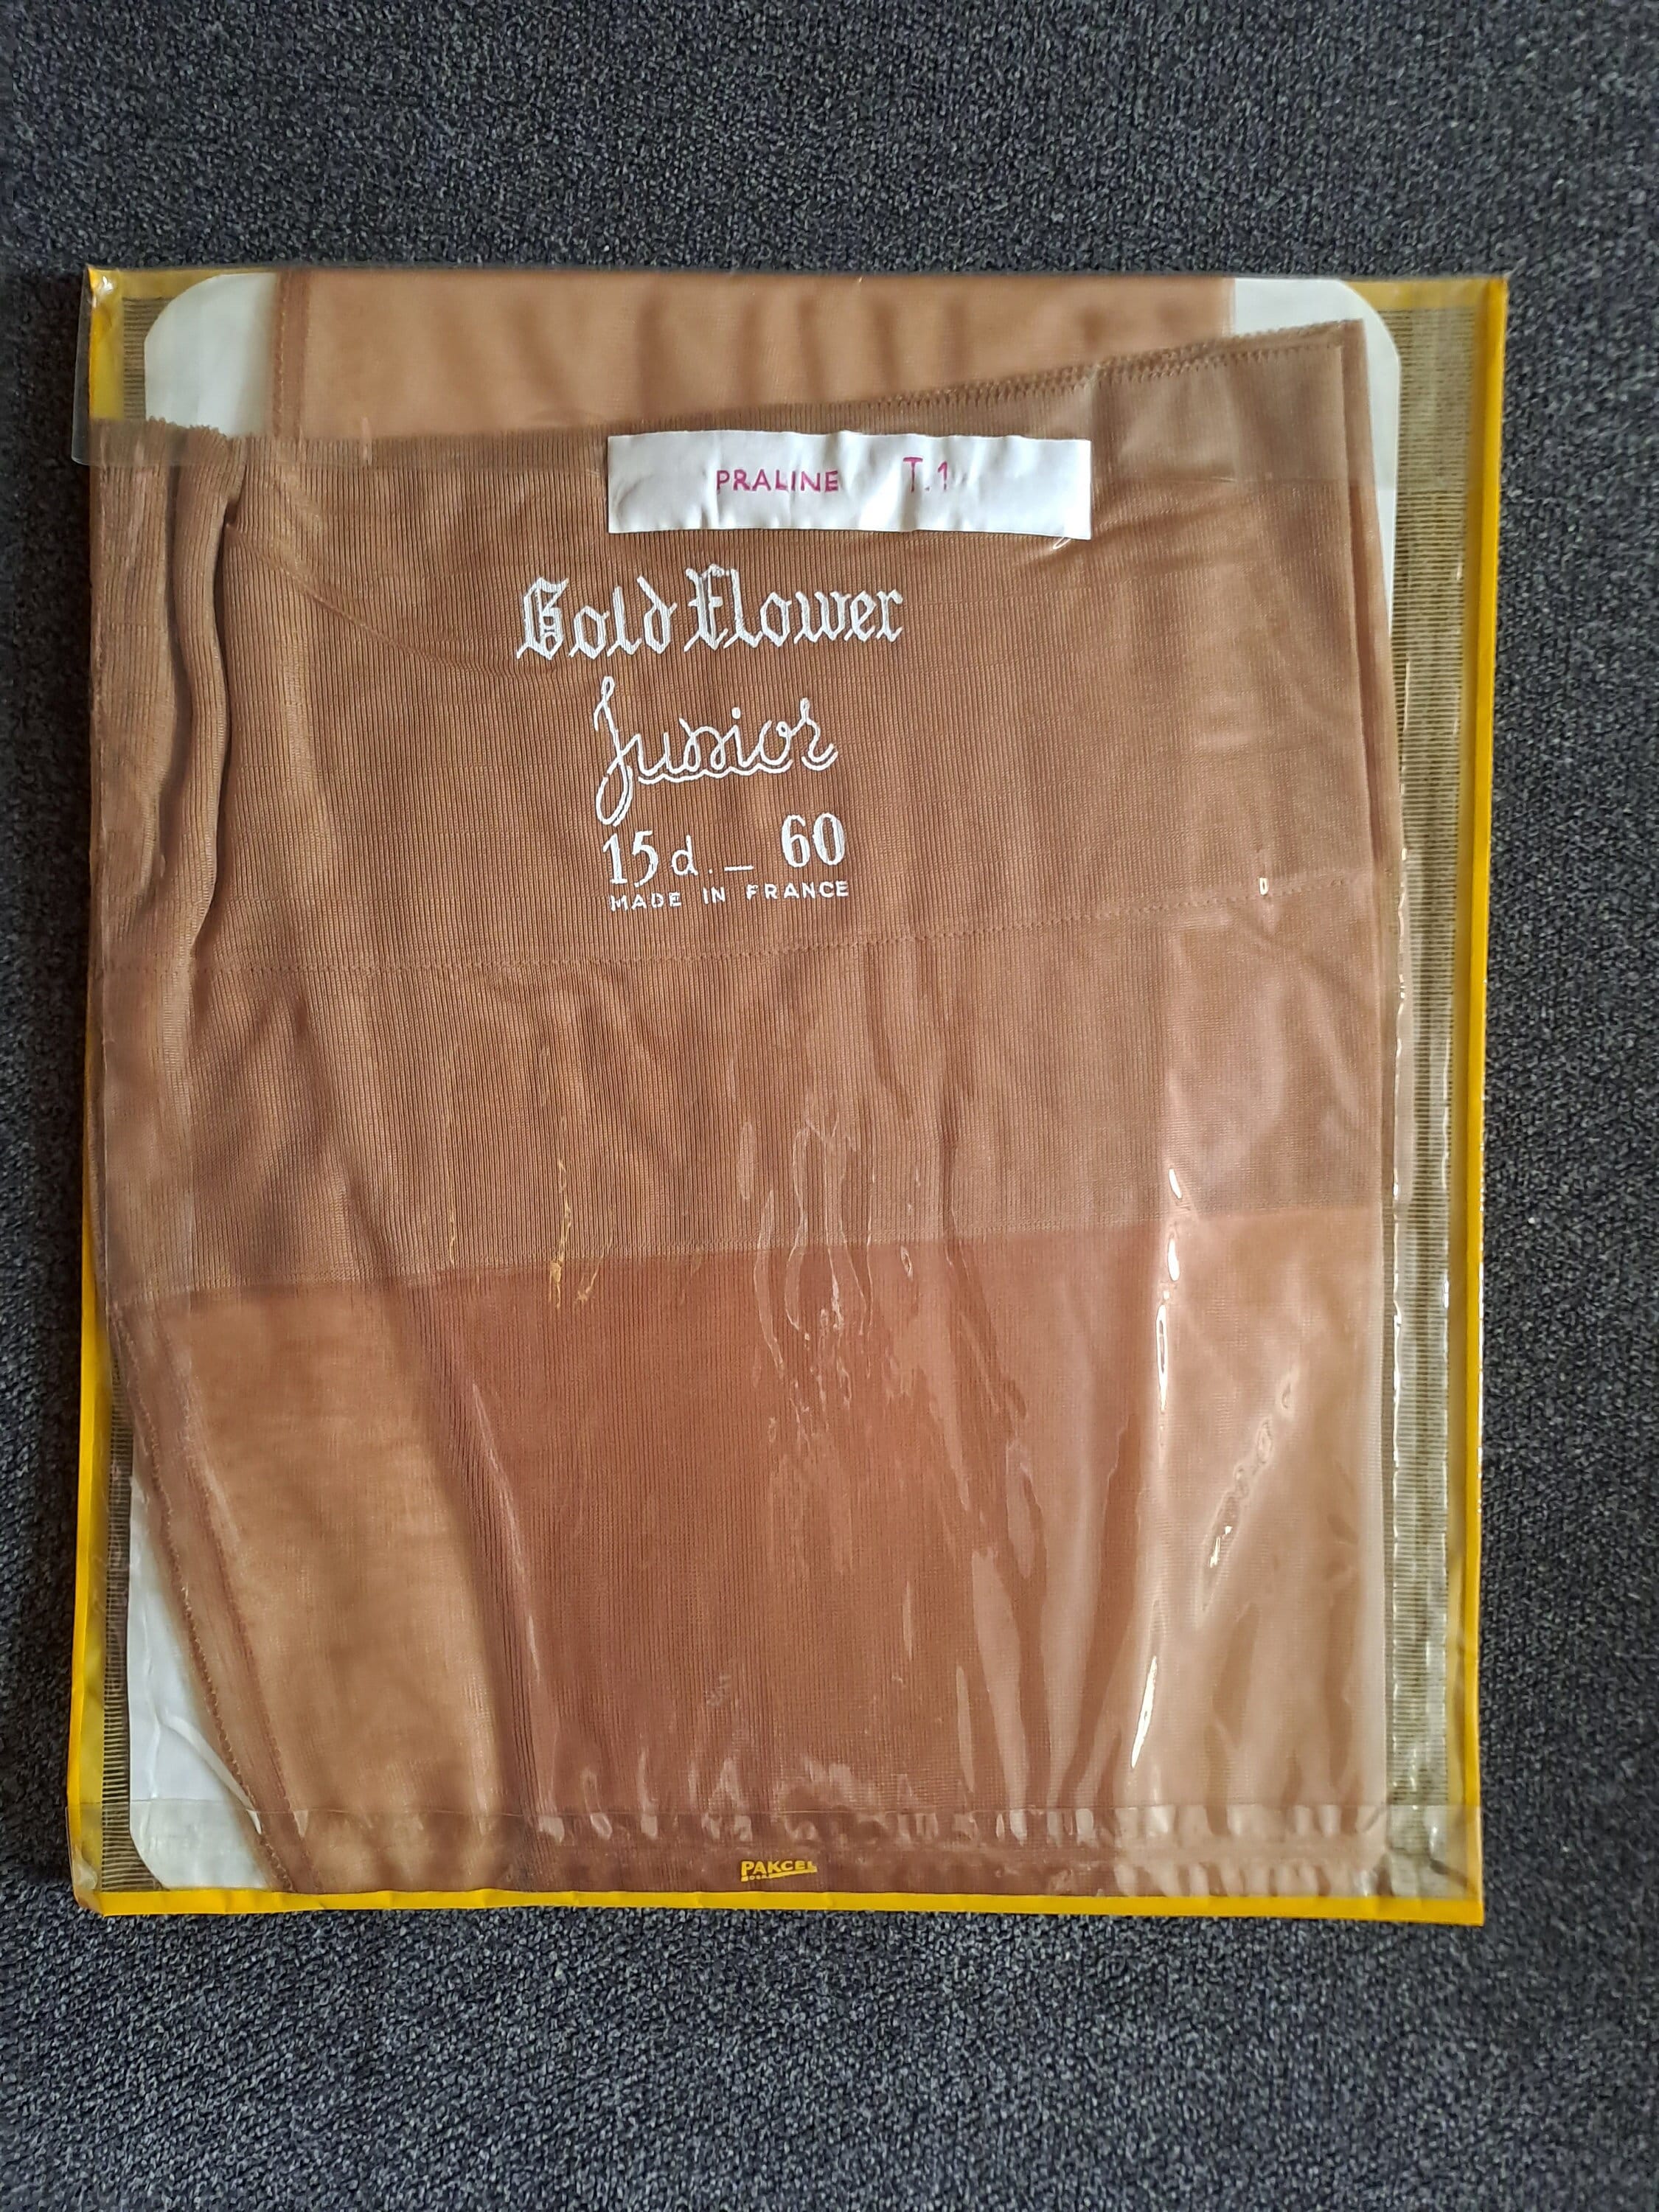 Vintage 1960s 'Glamourette' Italian Made Nylon Bas Taille 10,5 Non porté  Scellé dans son emballage d'origine LIVRAISON GRATUITE AU ROYAUME-UNI -   France